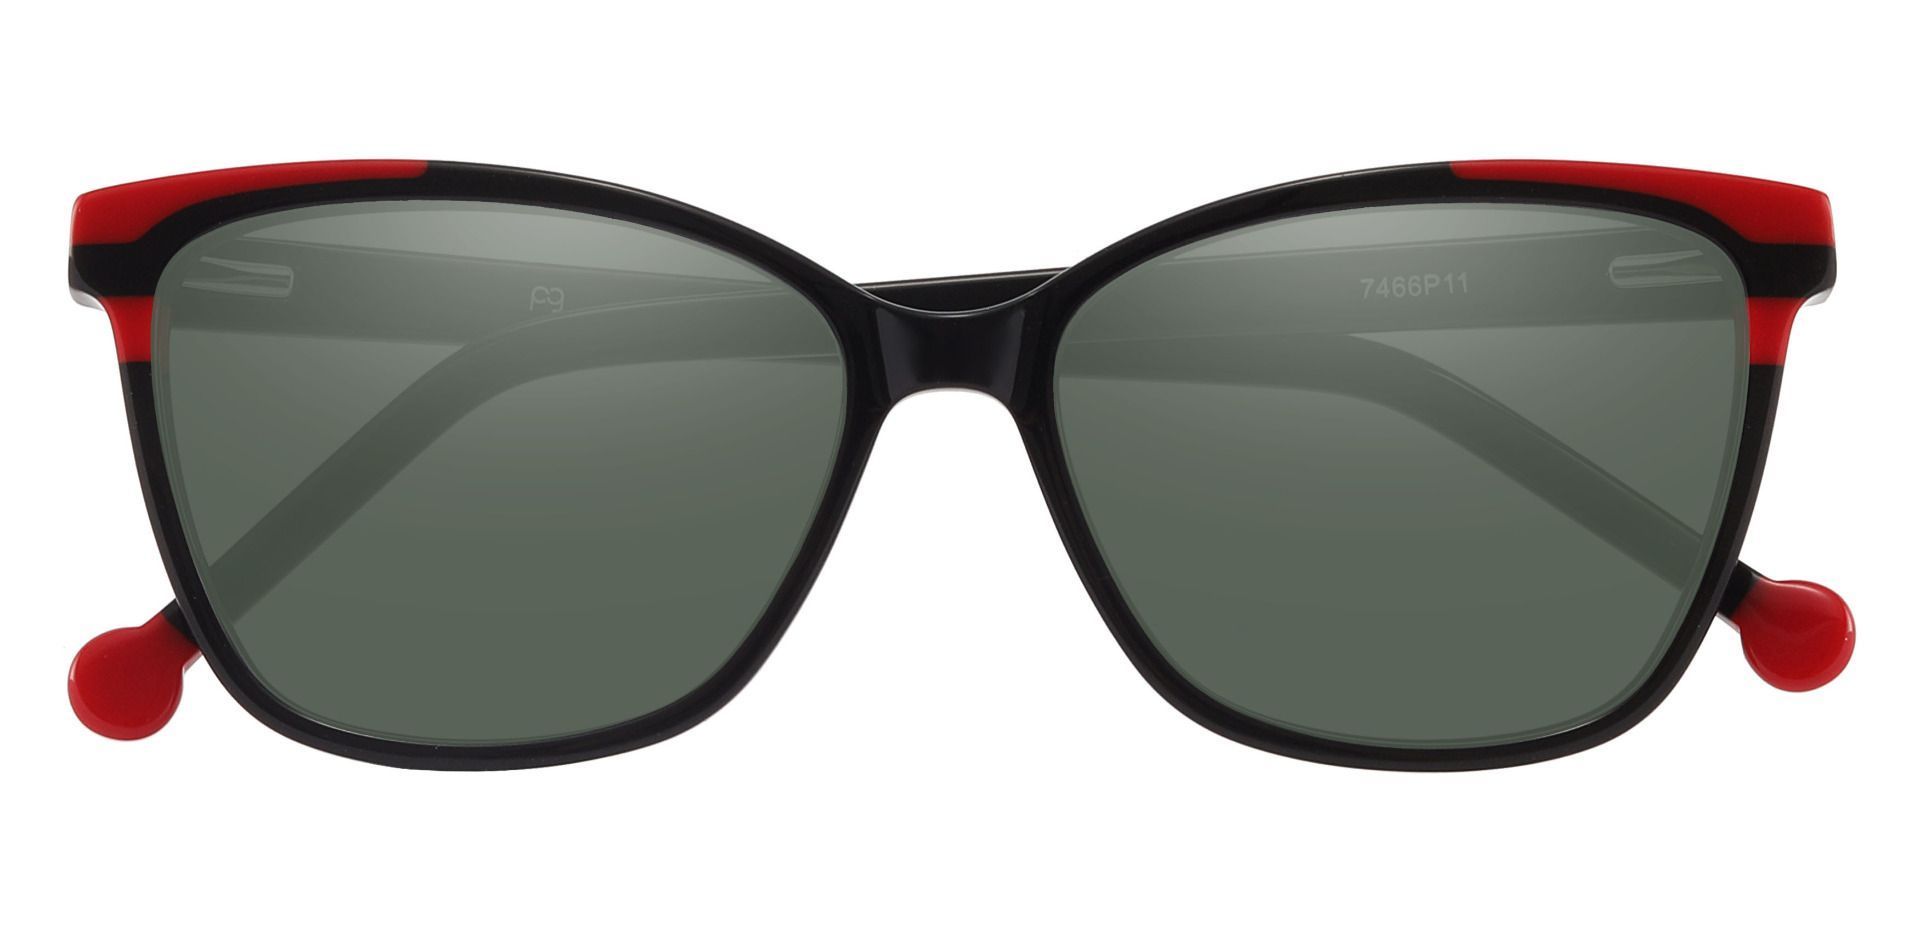 Shania Cat Eye Prescription Sunglasses - Black Frame With Green Lenses